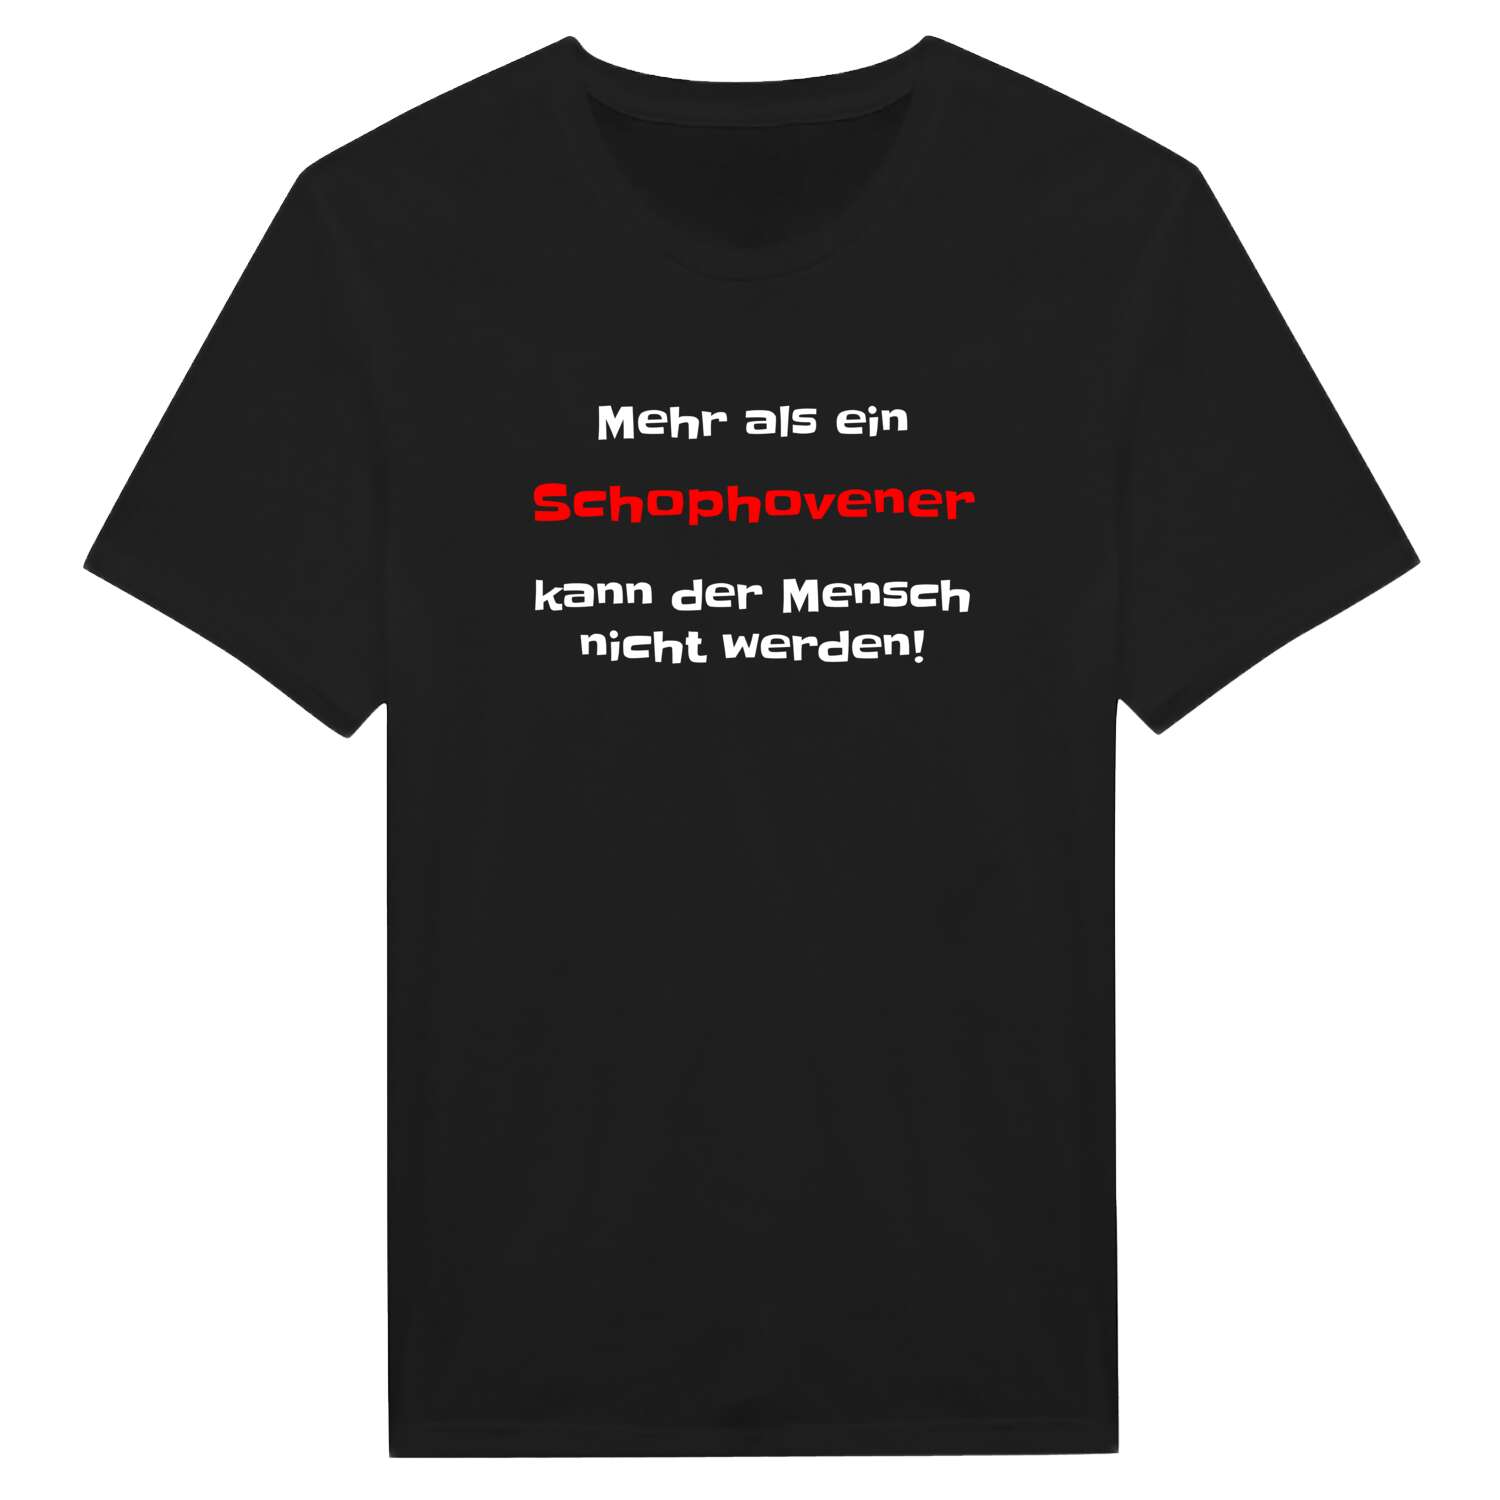 Schophoven T-Shirt »Mehr als ein«